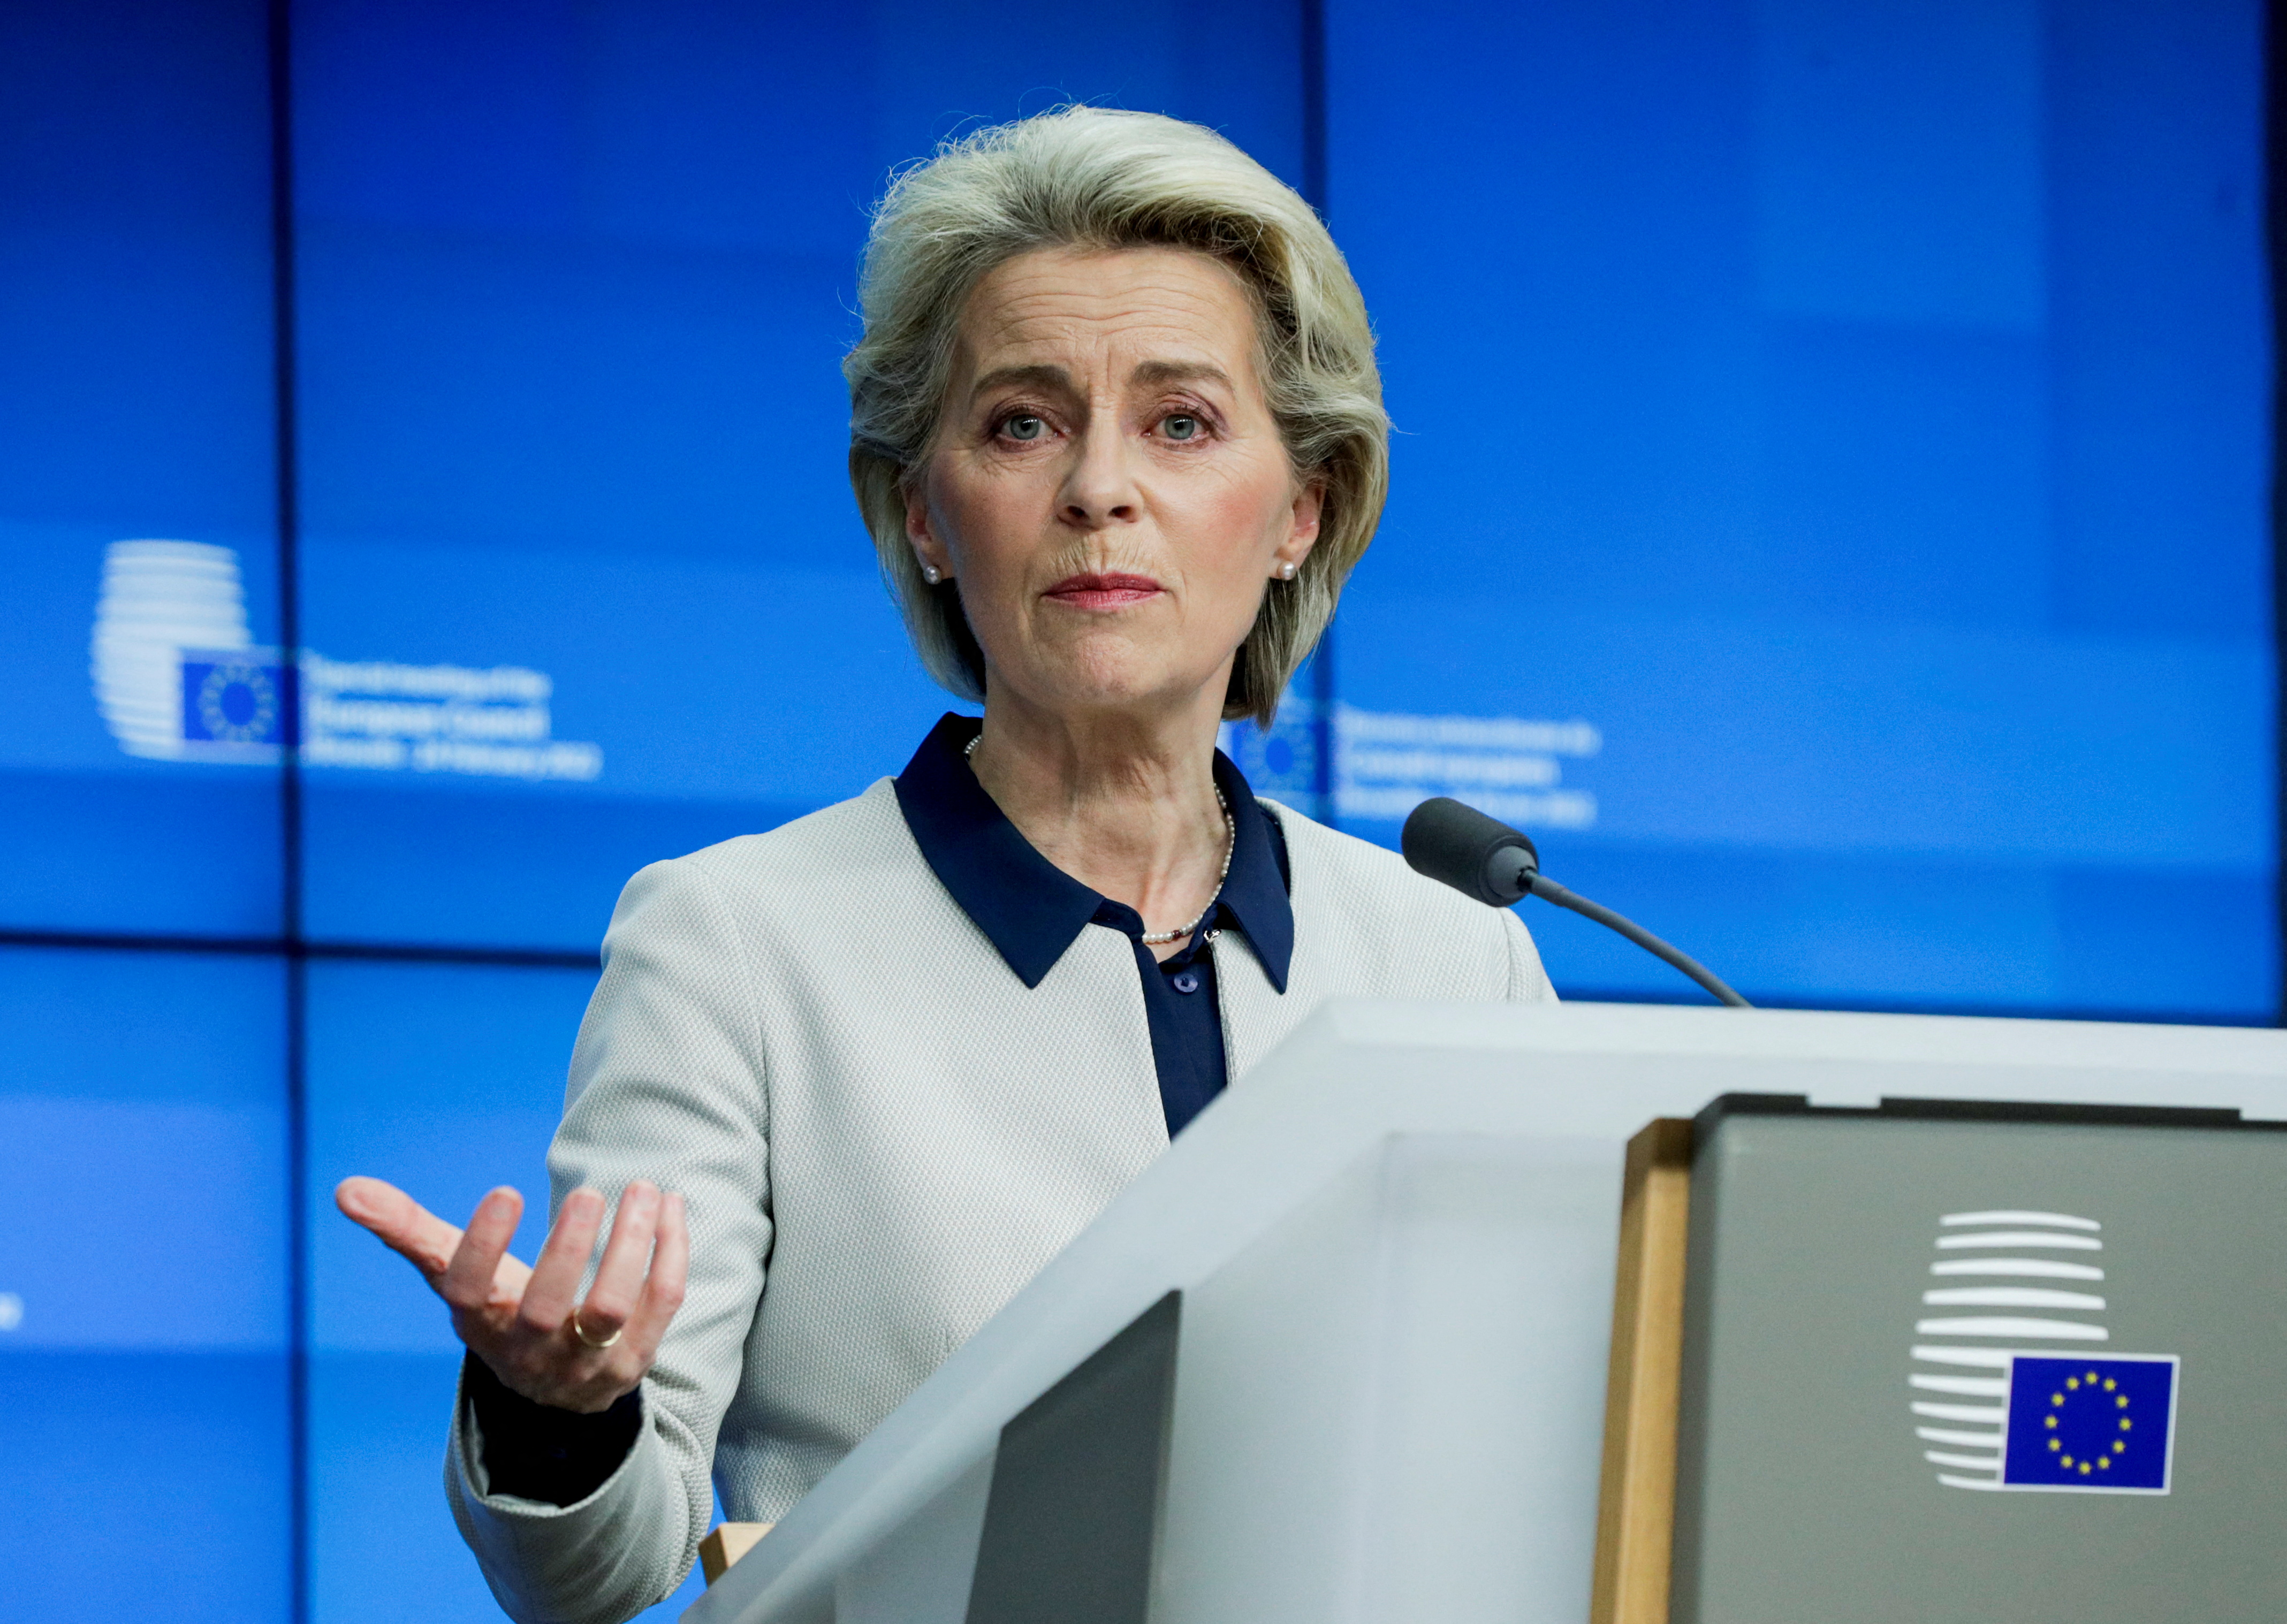 Chủ tịch Ủy ban châu Âu Ursula von der Leyen đưa ra một cuộc họp báo khi kết thúc cuộc họp đặc biệt của Hội đồng châu Âu về hành động gây hấn của Nga đối với Ukraine, tại Brussels, Bỉ, ngày 25 tháng 2 năm 2022. Olivier Hoslet / Pool via REUTERS